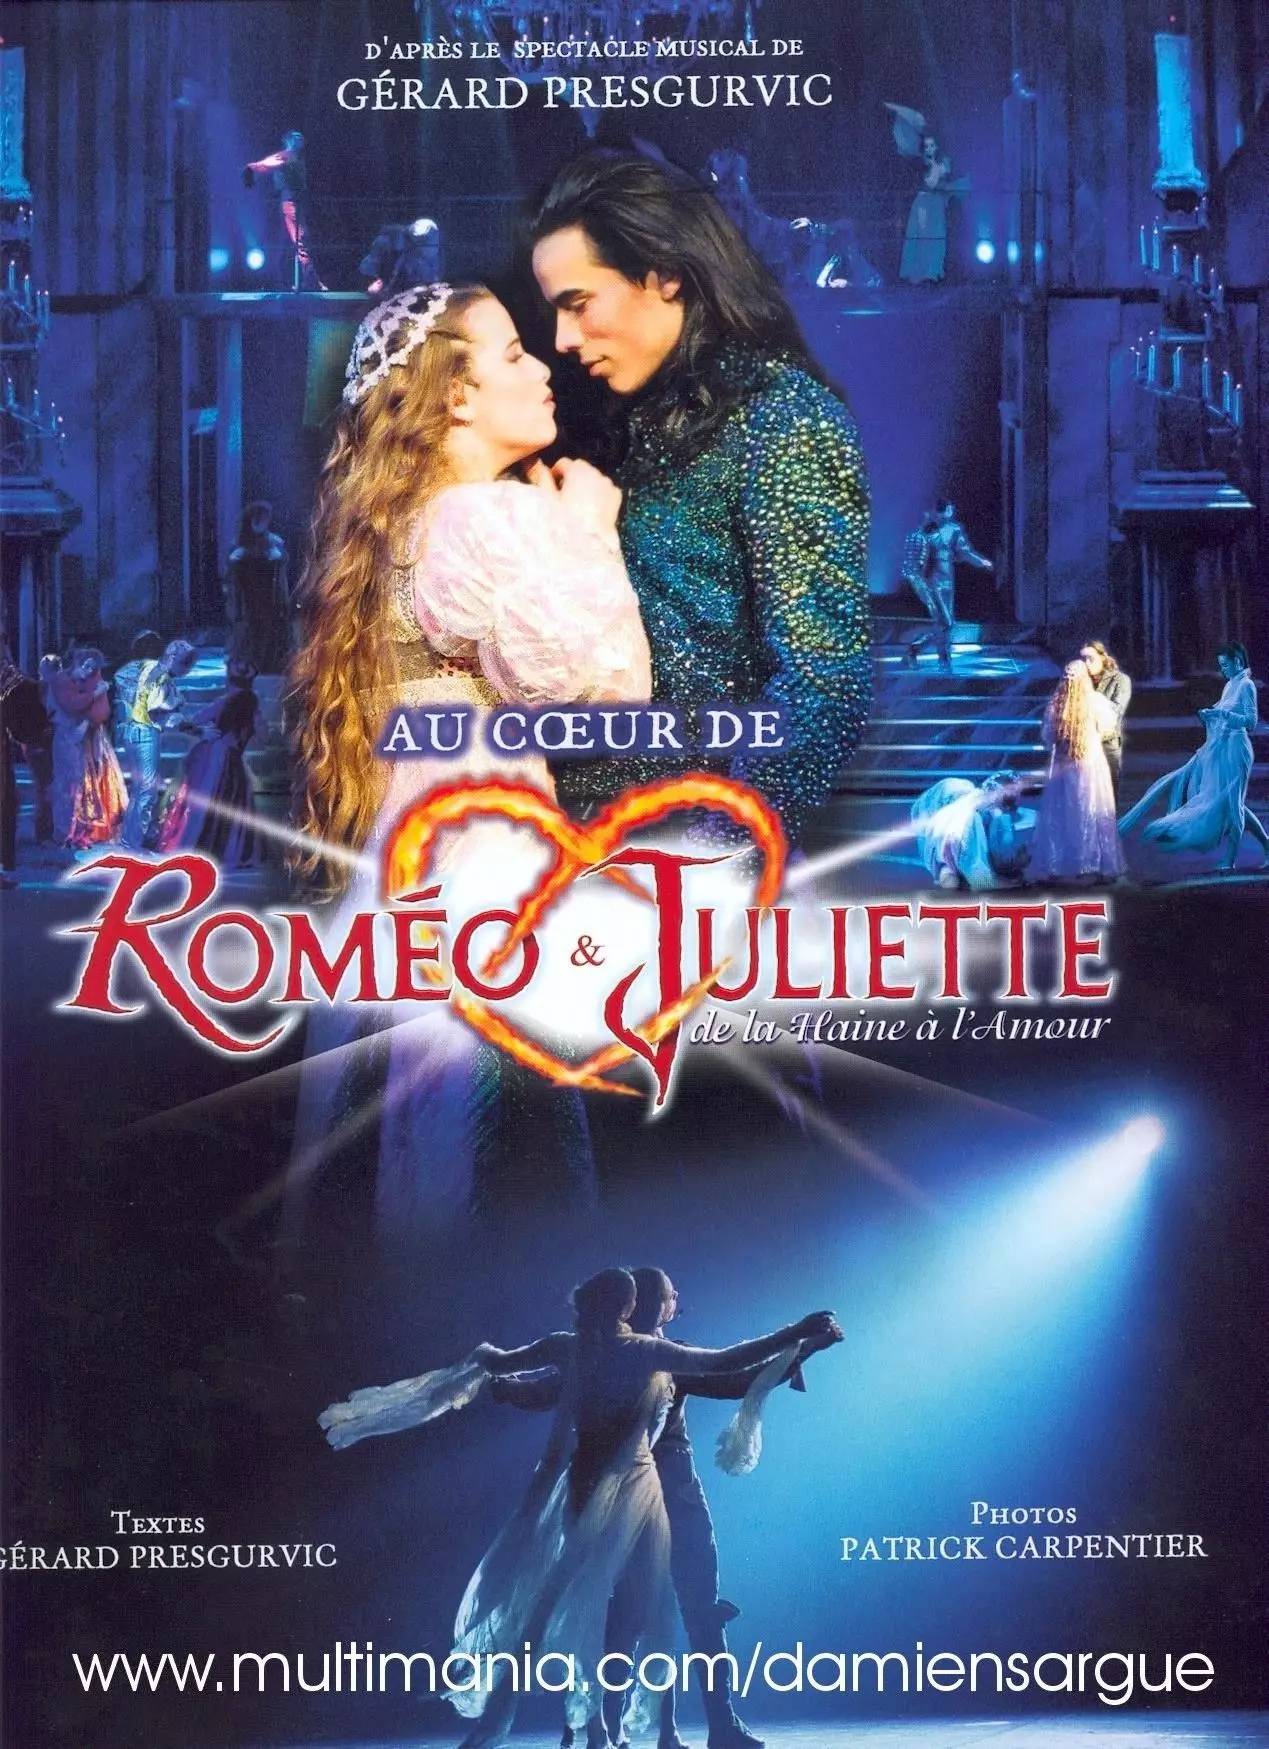 连演10 年的法语音乐剧《罗密欧与朱丽叶》,时隔 6 年